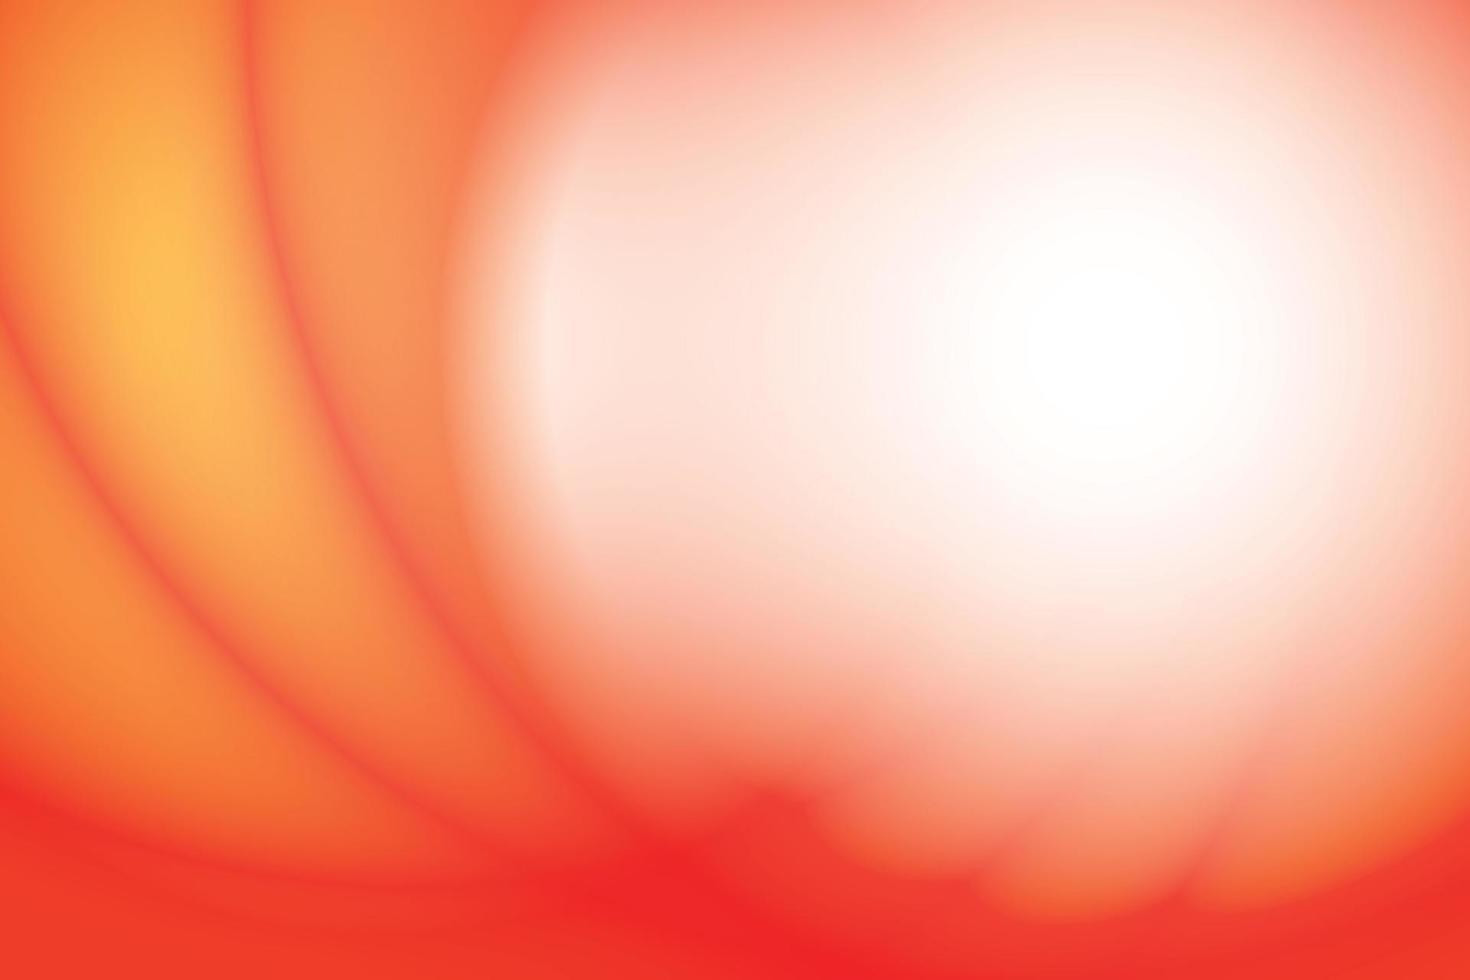 abstrakt geometrisk orange och vit Färg bakgrund med modern Ränder. vektor illustration.